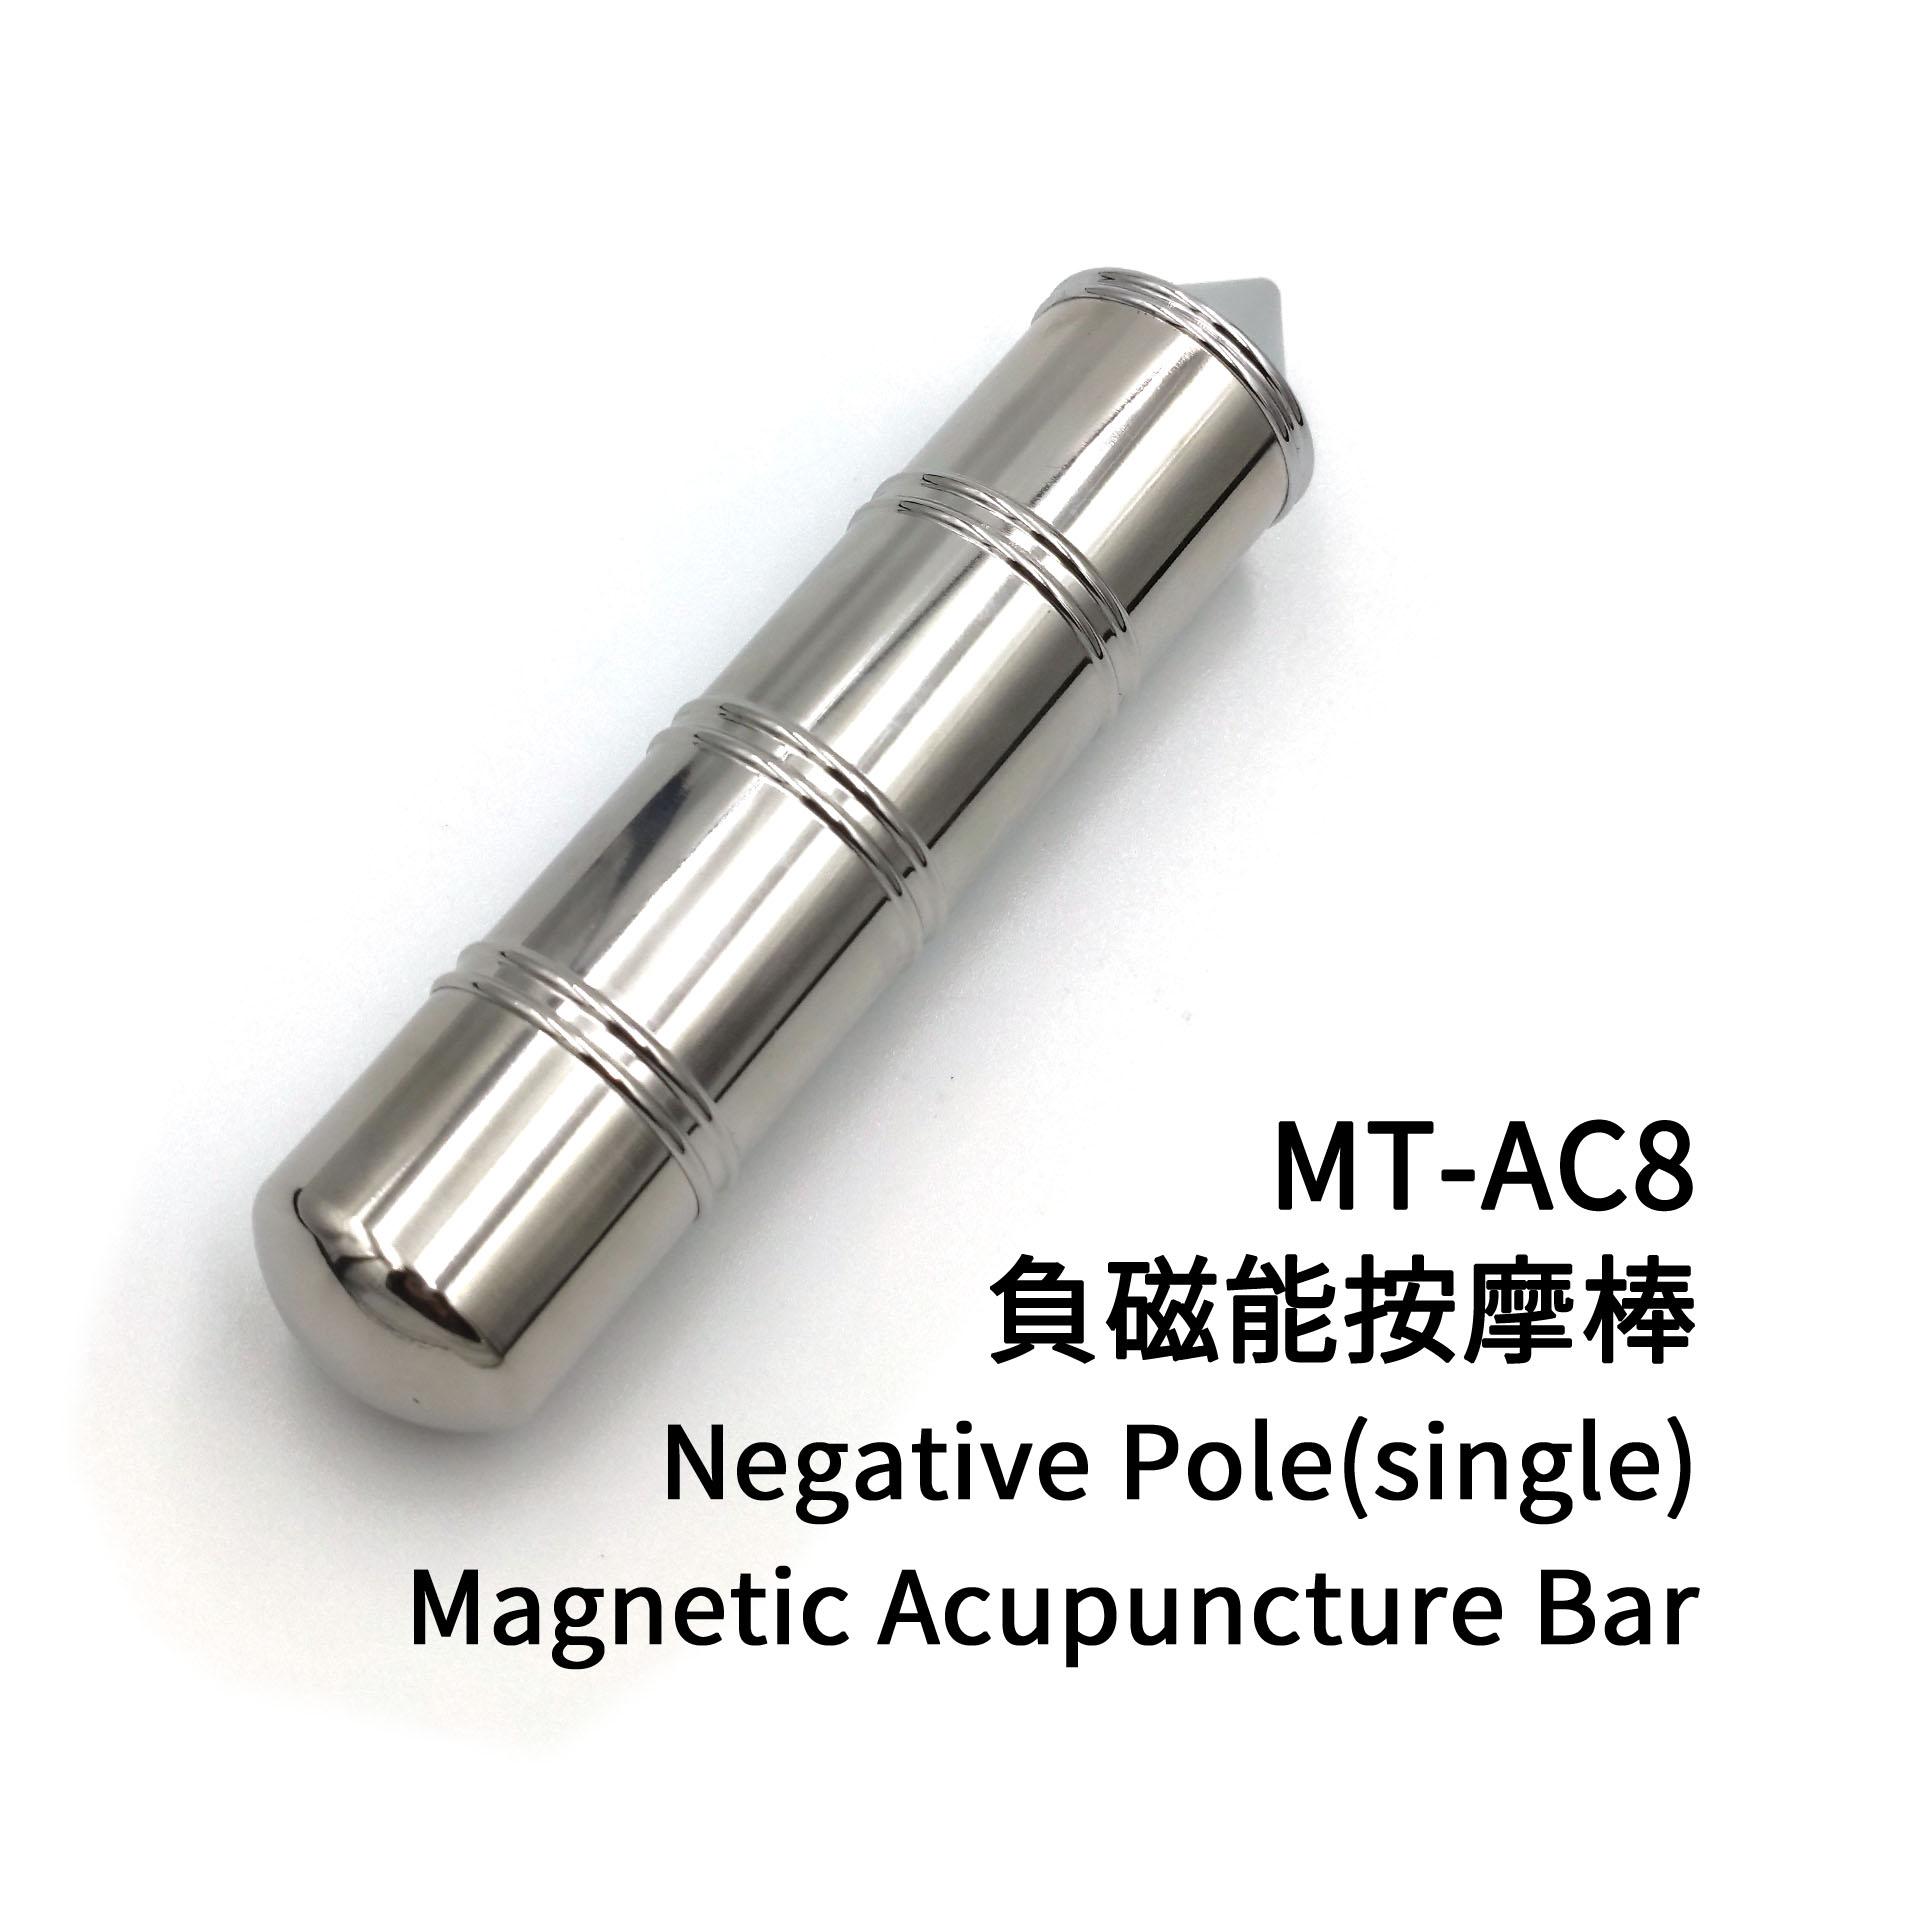 眼用磁療針-尖(塑鋼款) MT-AC3